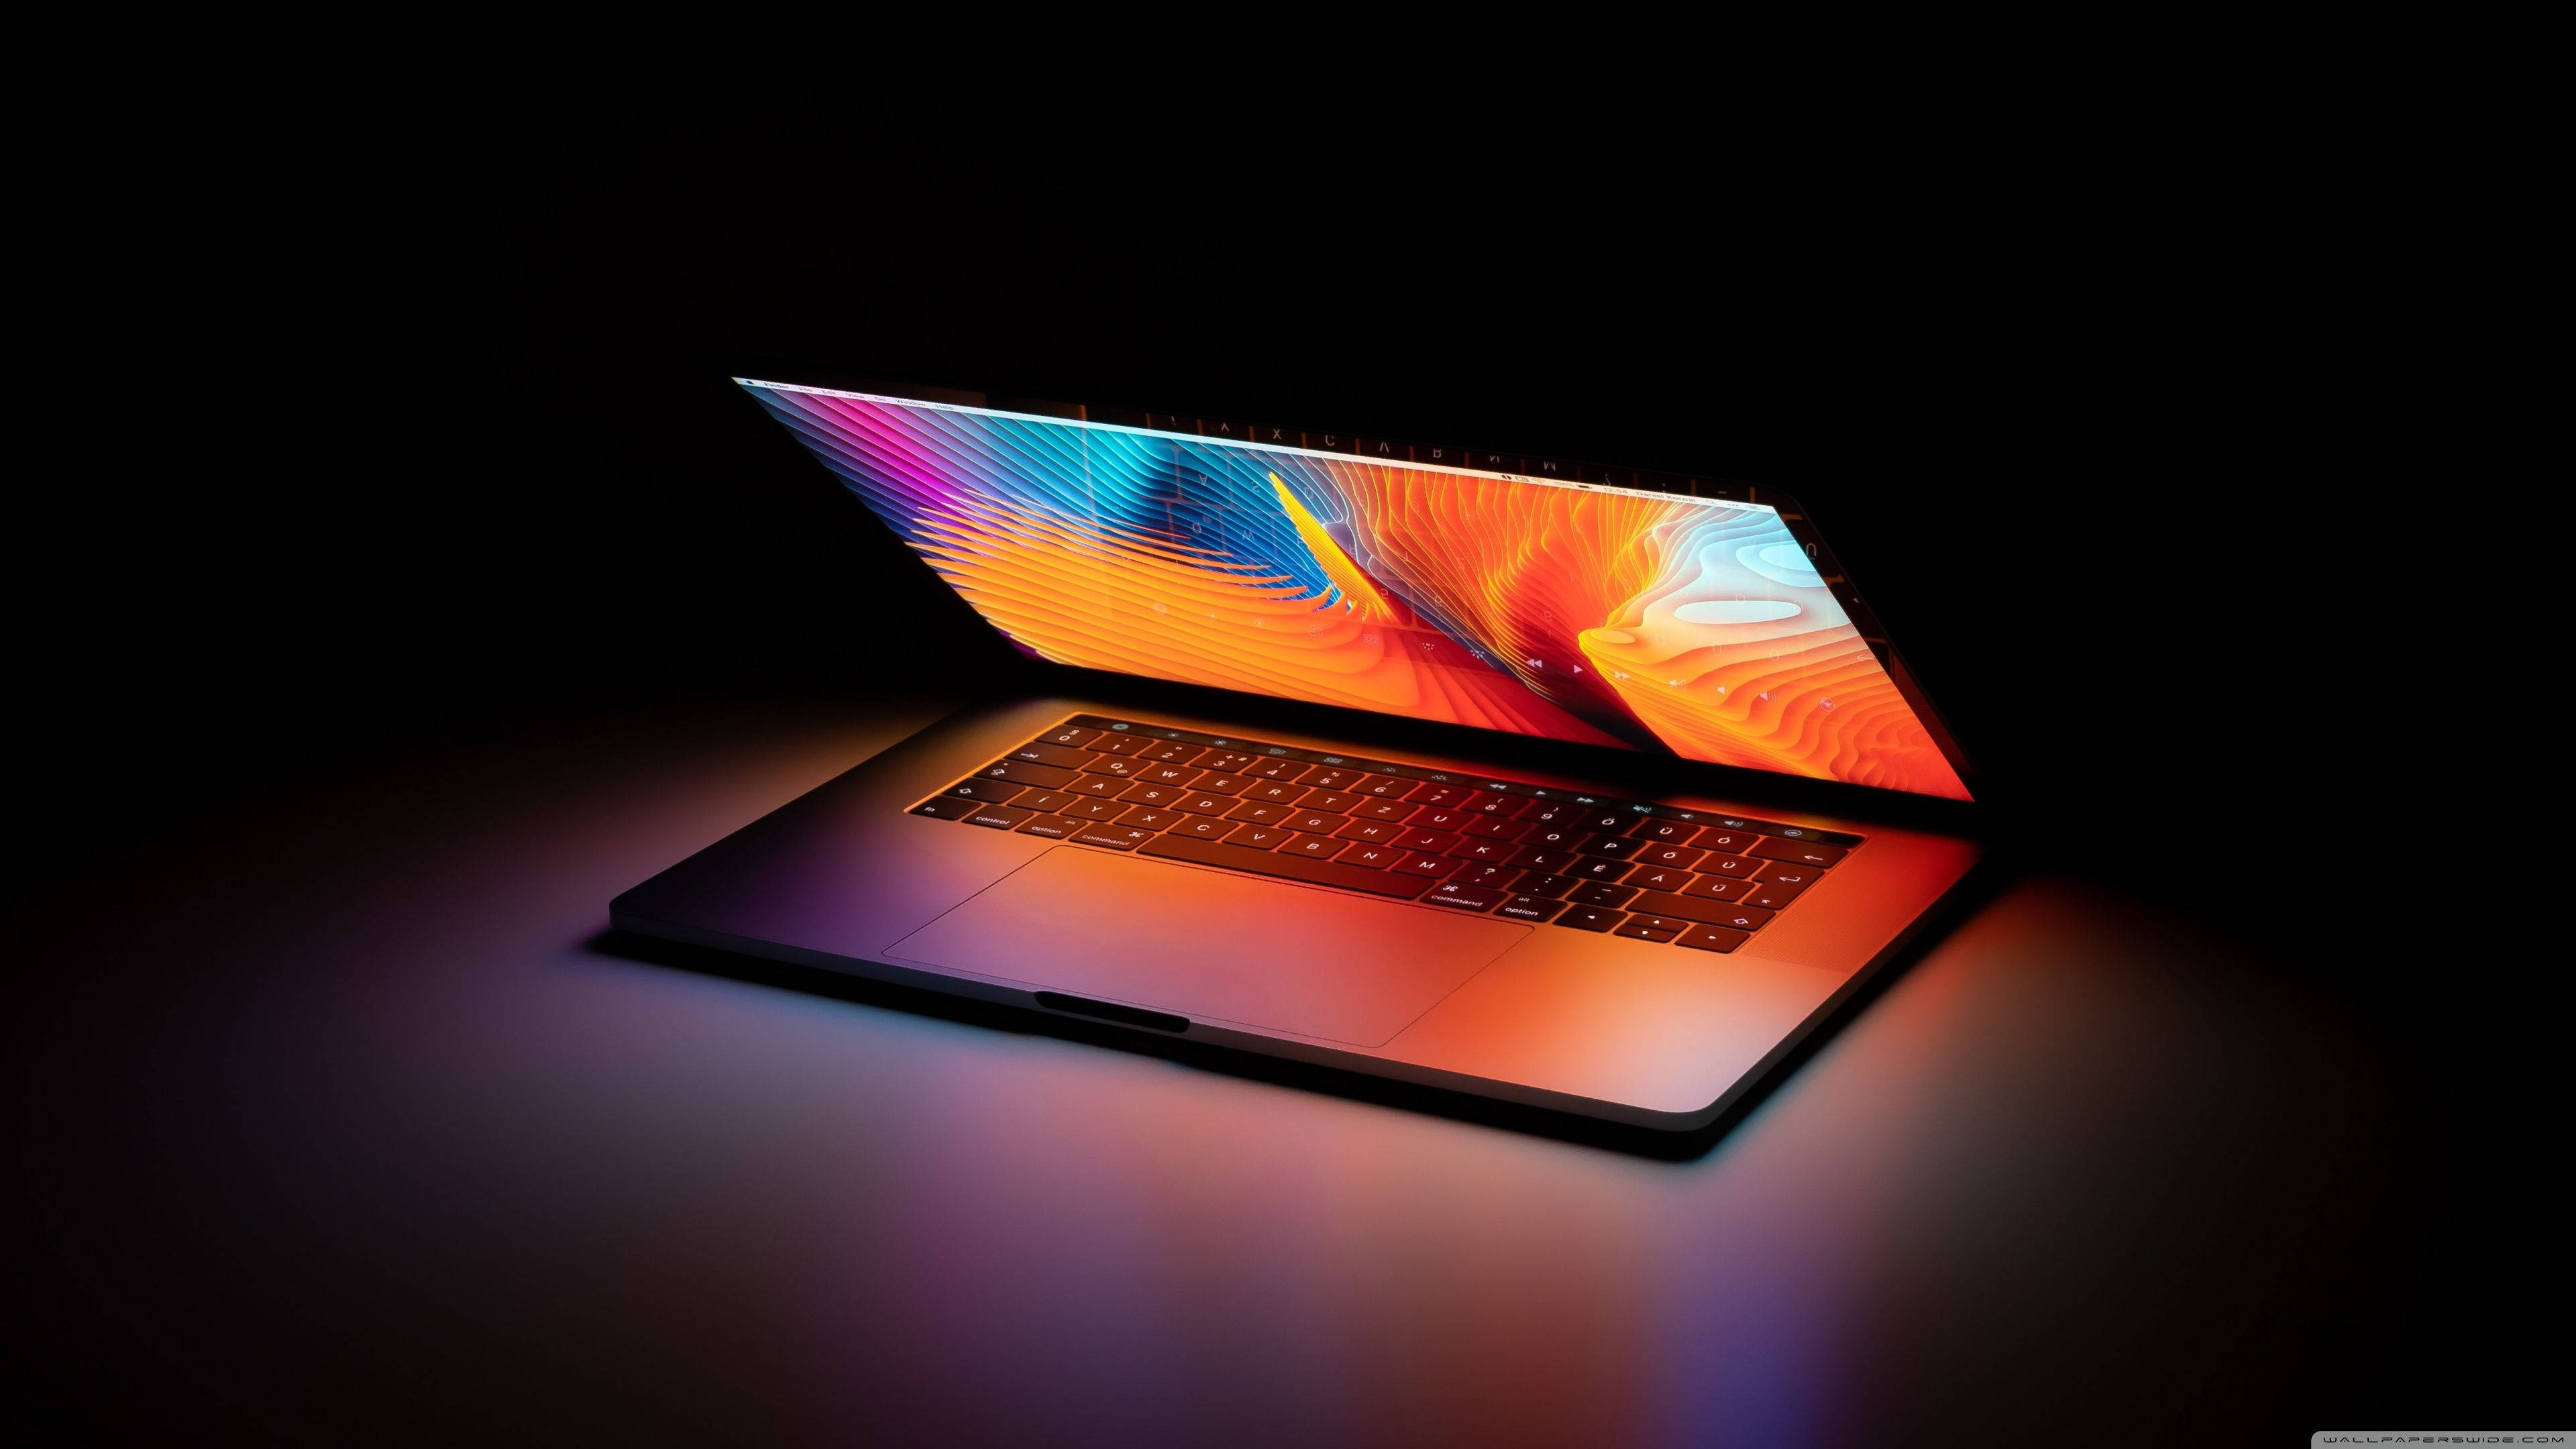 Hình nền laptop trong bóng tối miễn phí sẽ đem đến cho bạn sự khác biệt và hấp dẫn mà bạn chưa từng trải nghiệm. Hãy khám phá ngay bộ sưu tập hình nền độc đáo và hiện đại của chúng tôi để thật sự tận hưởng trải nghiệm thú vị nhé.